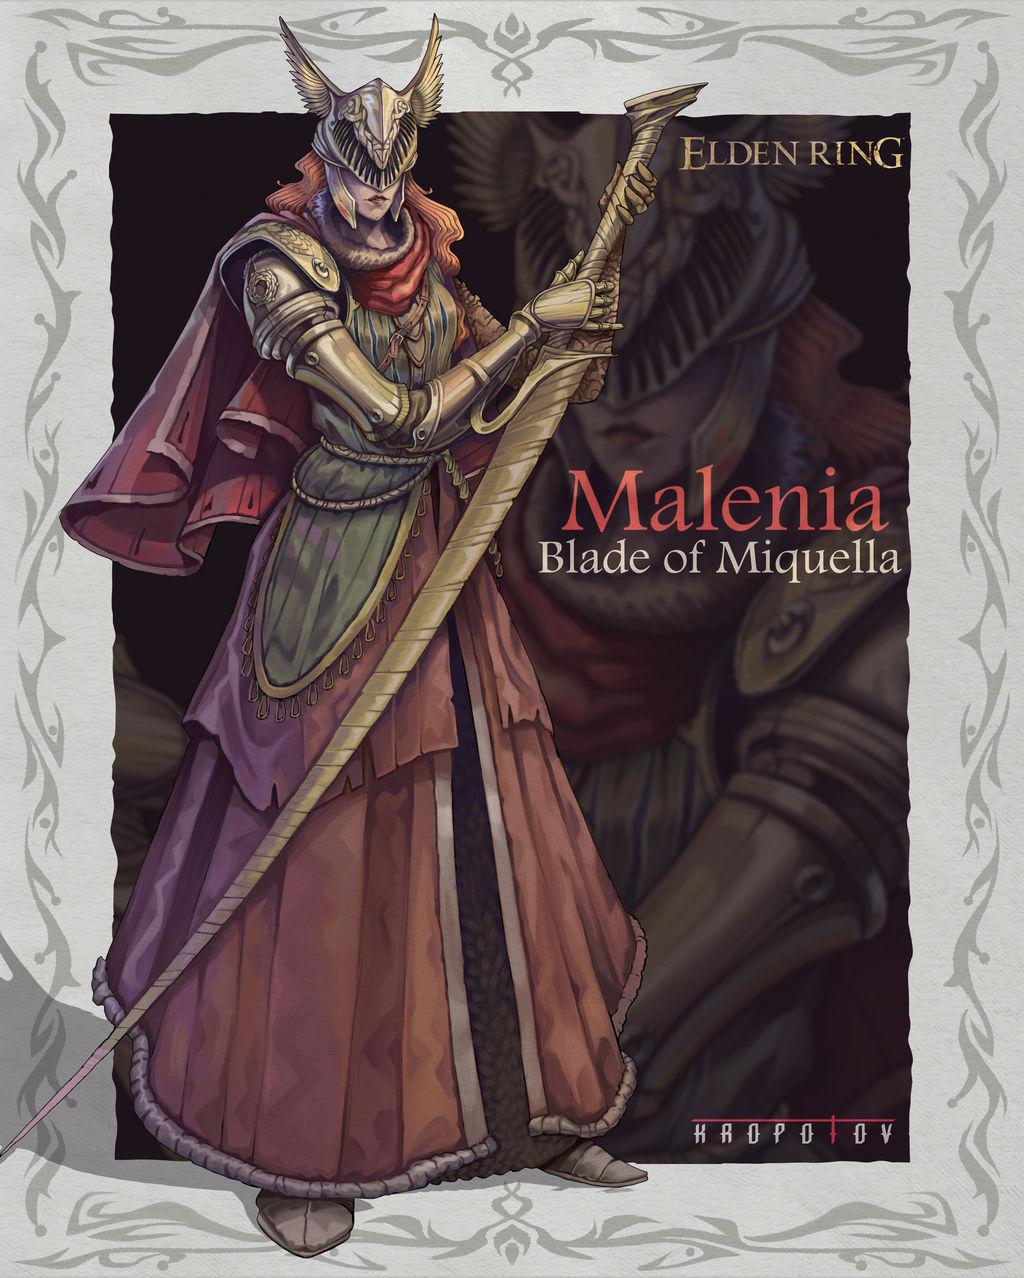 Malenia Blade of Miquella - Elden Ring by ClaireSea on DeviantArt